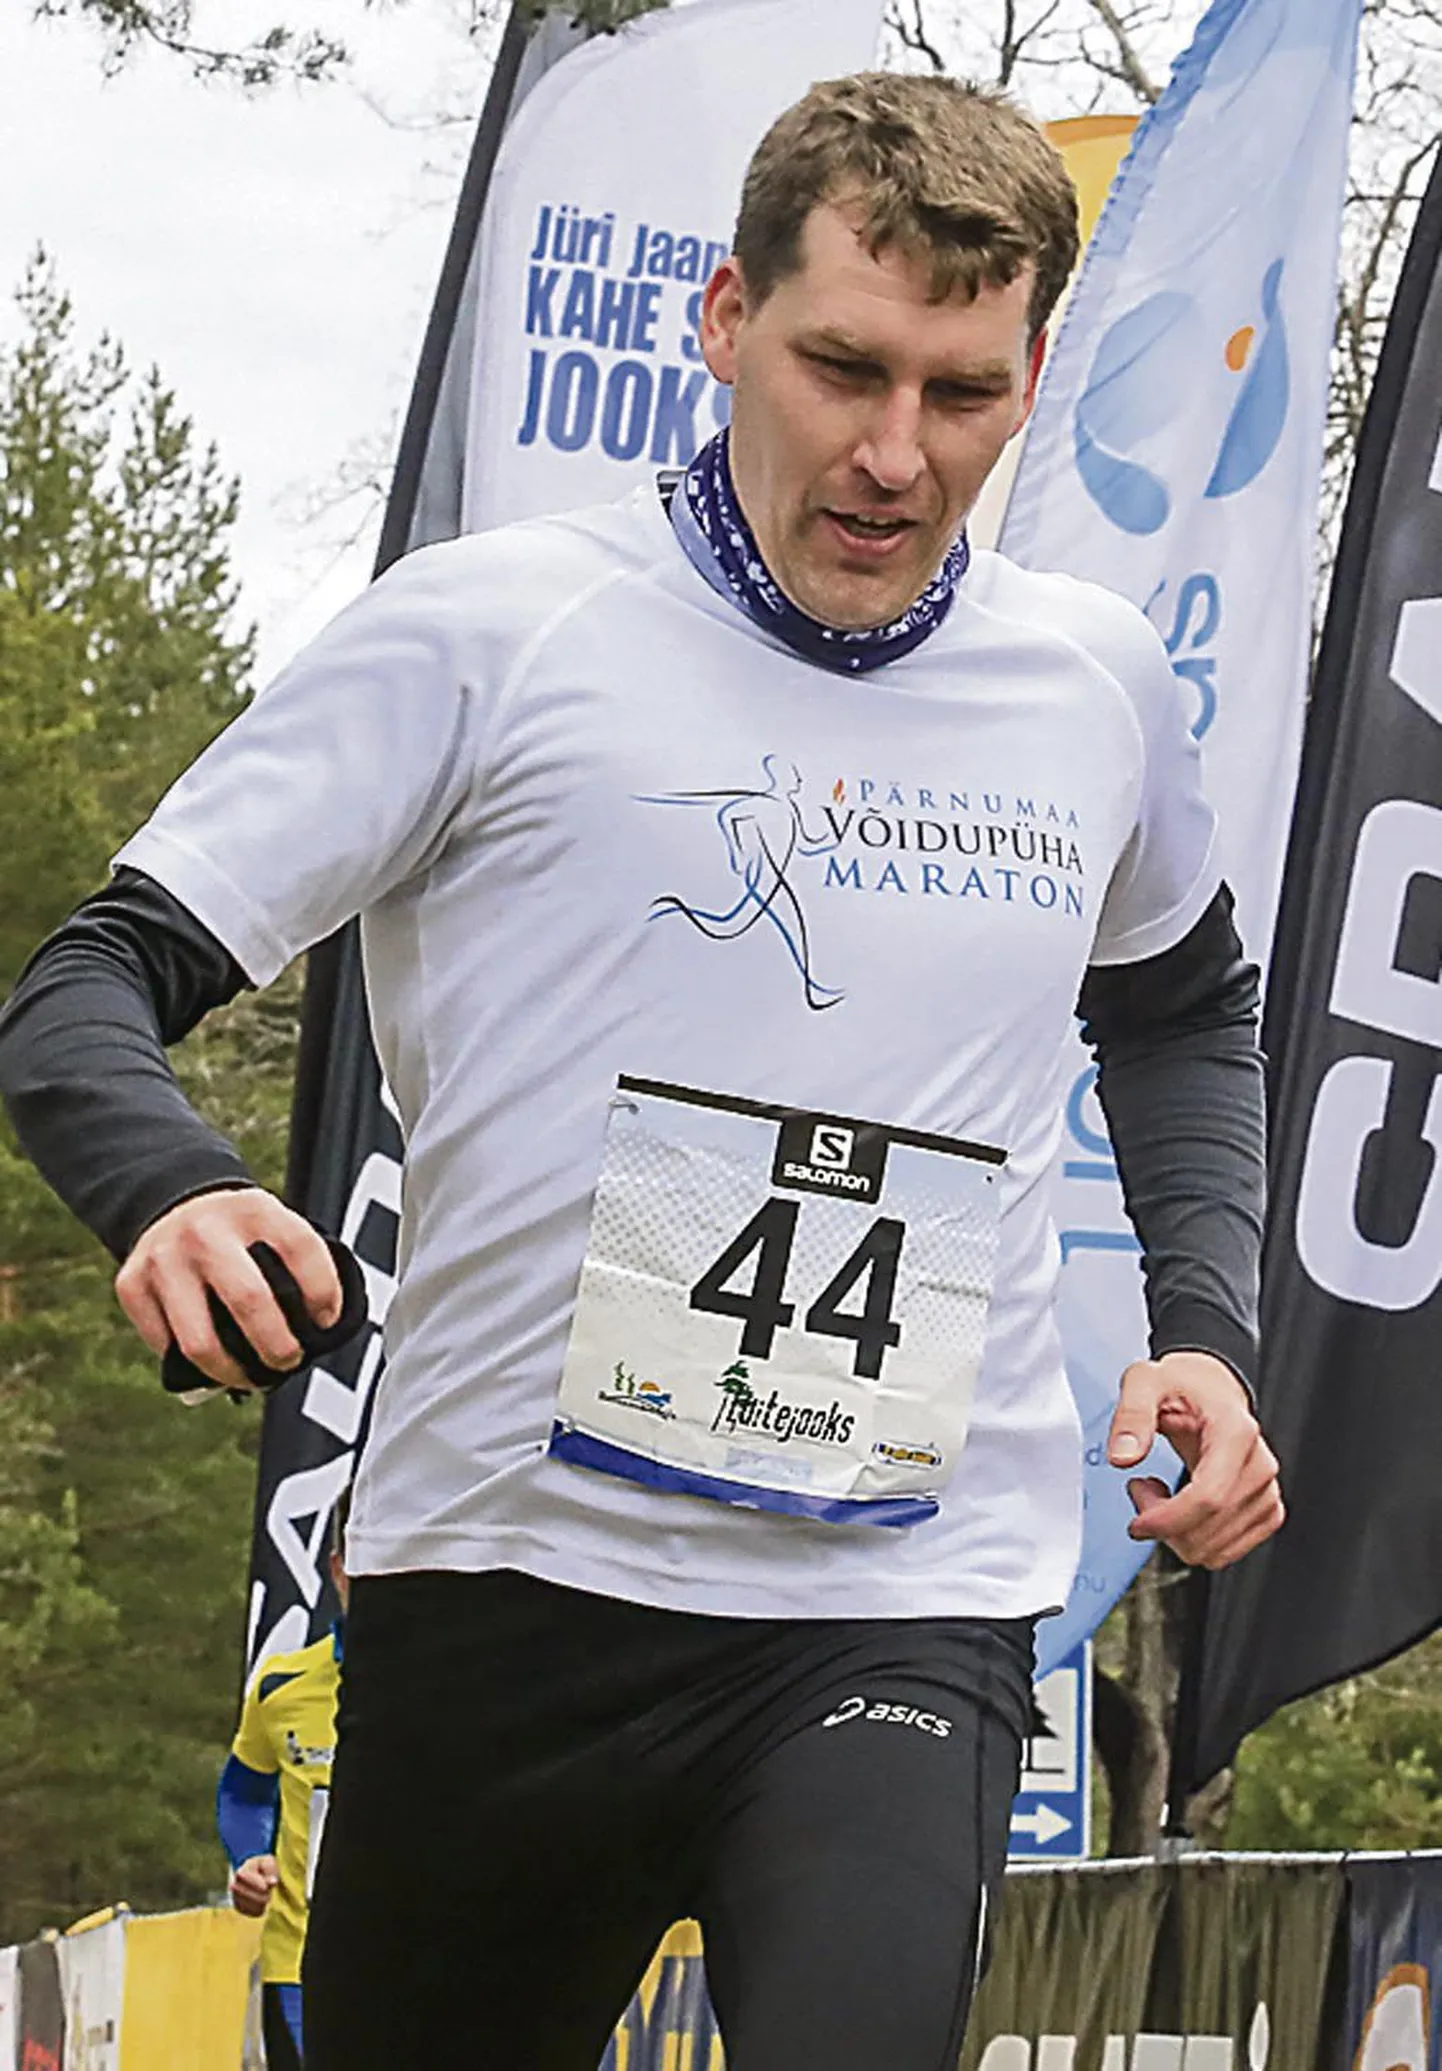 Pärnumaa võidupüha maratoni üks idee autoreid Andres Metsoja on aktiivne tervisesportlane.